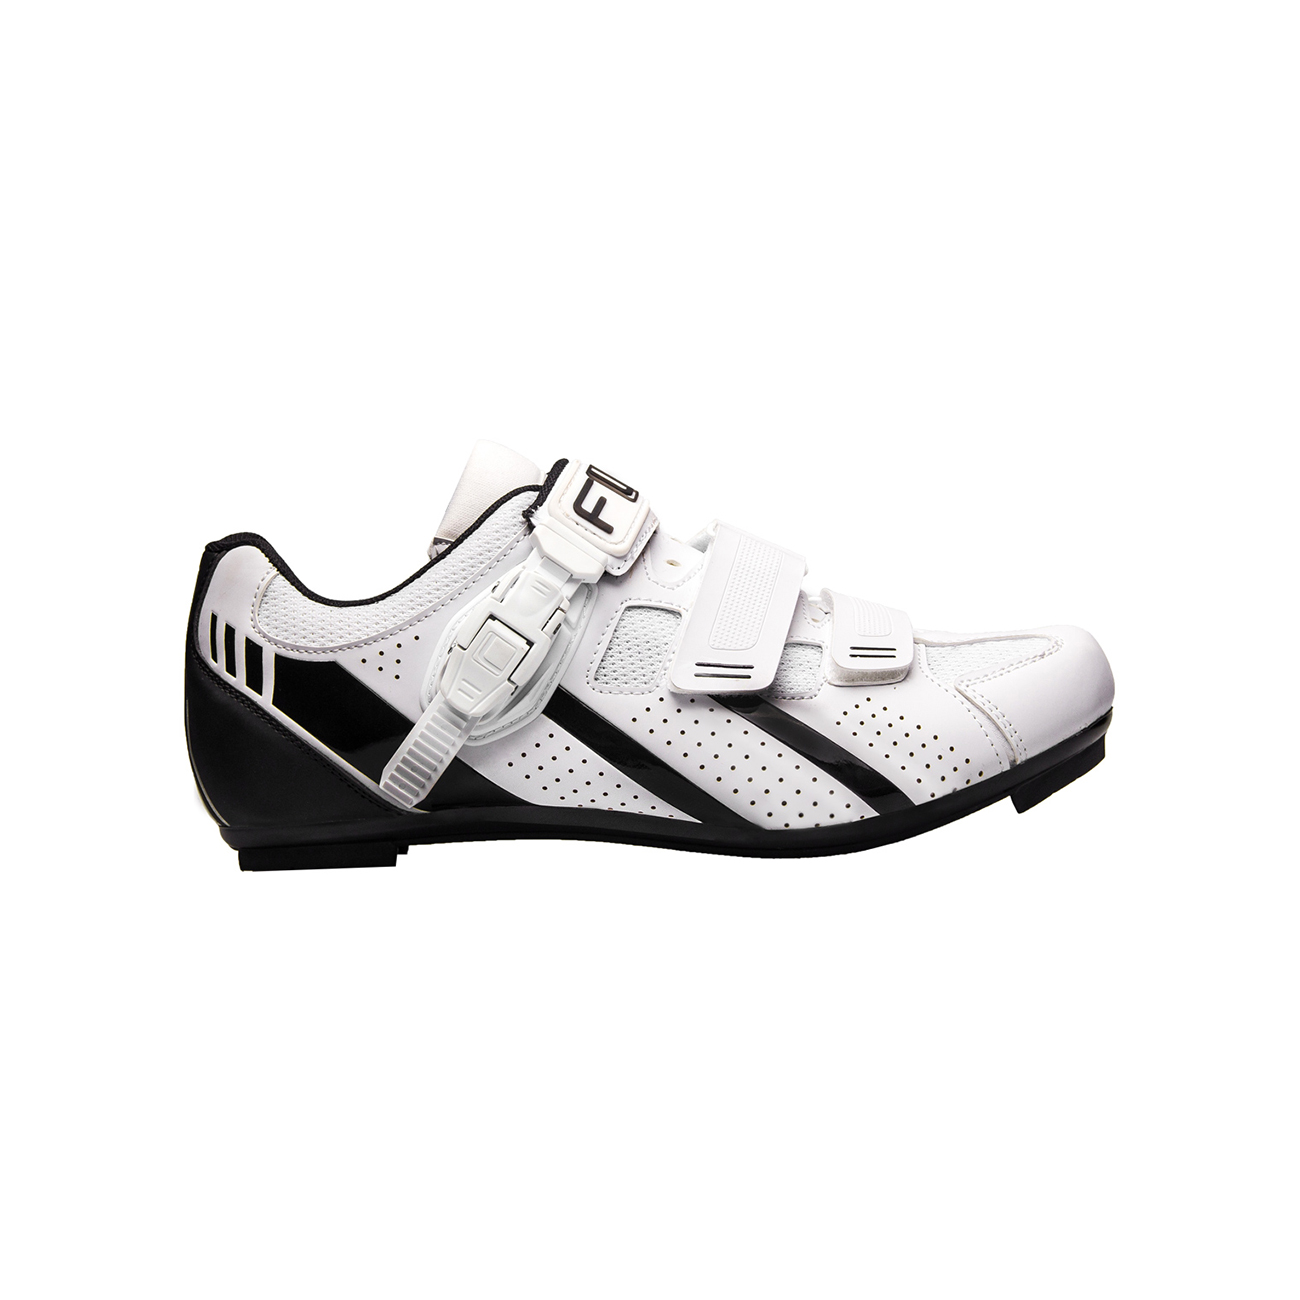 FLR Kerékpáros Cipő - F15 - Fekete/fehér